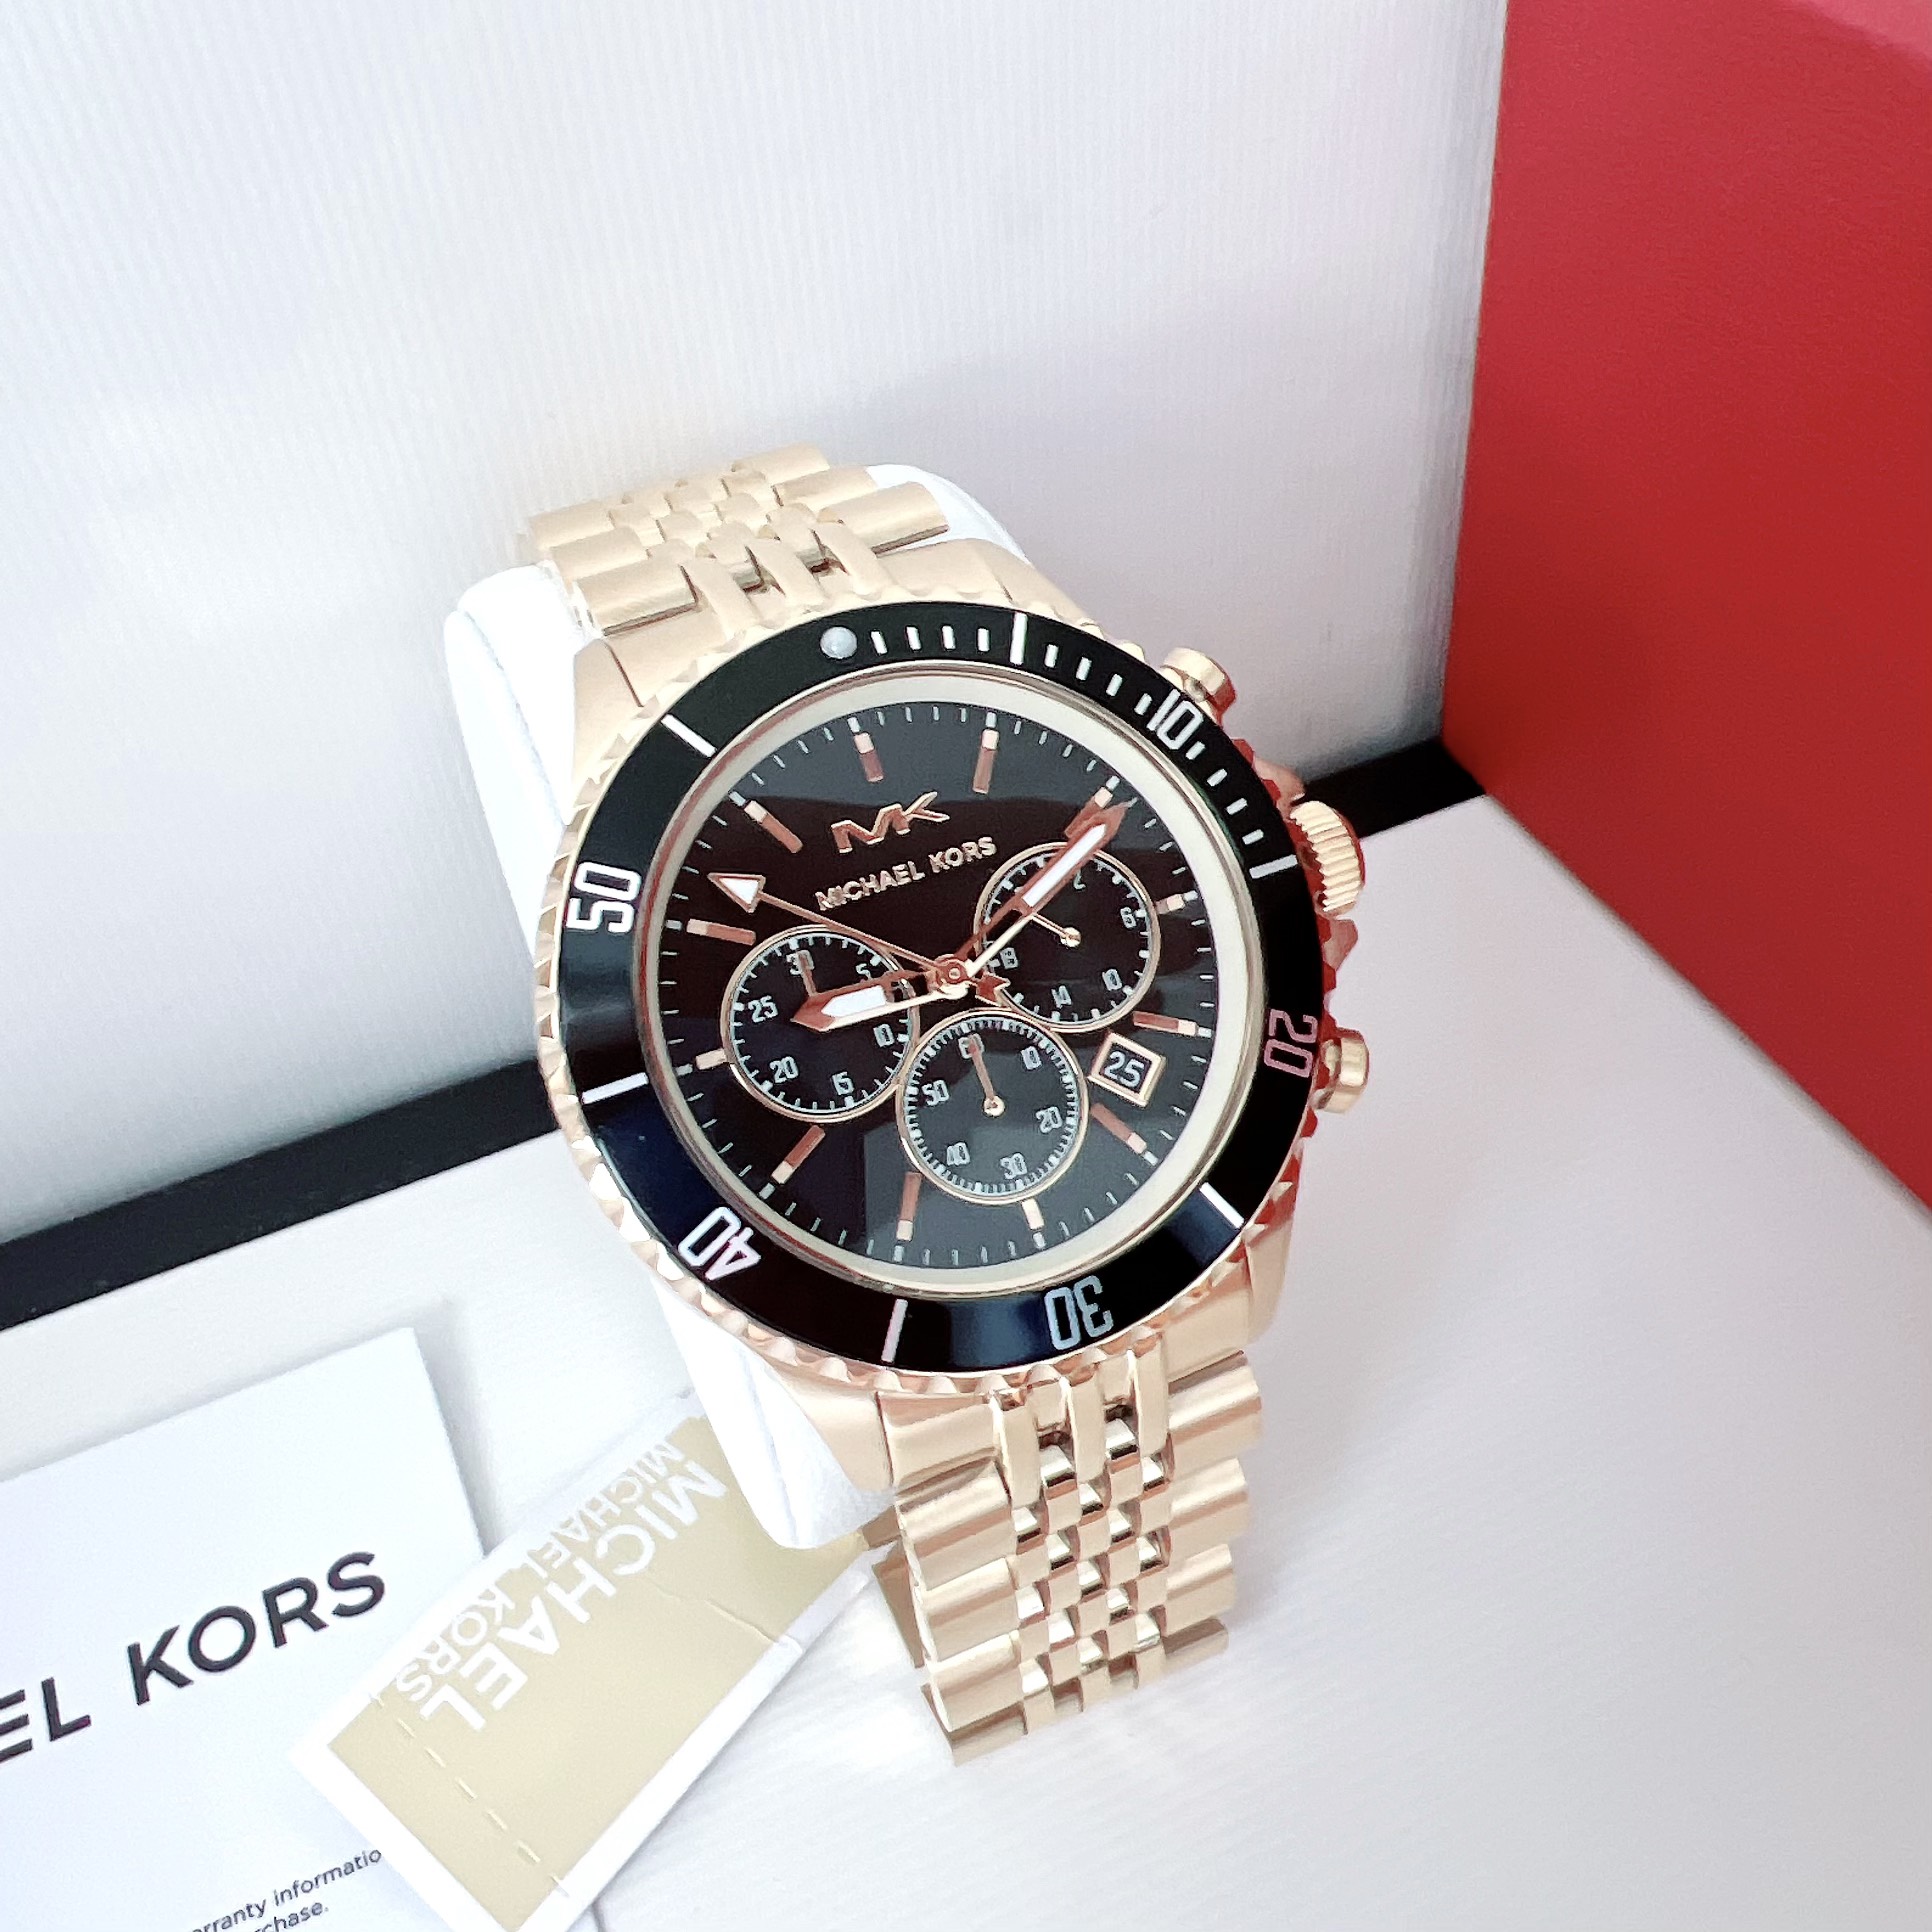 Michael Kors Lexington His and Hers Quartz Watch Set MK1047  Walmartcom